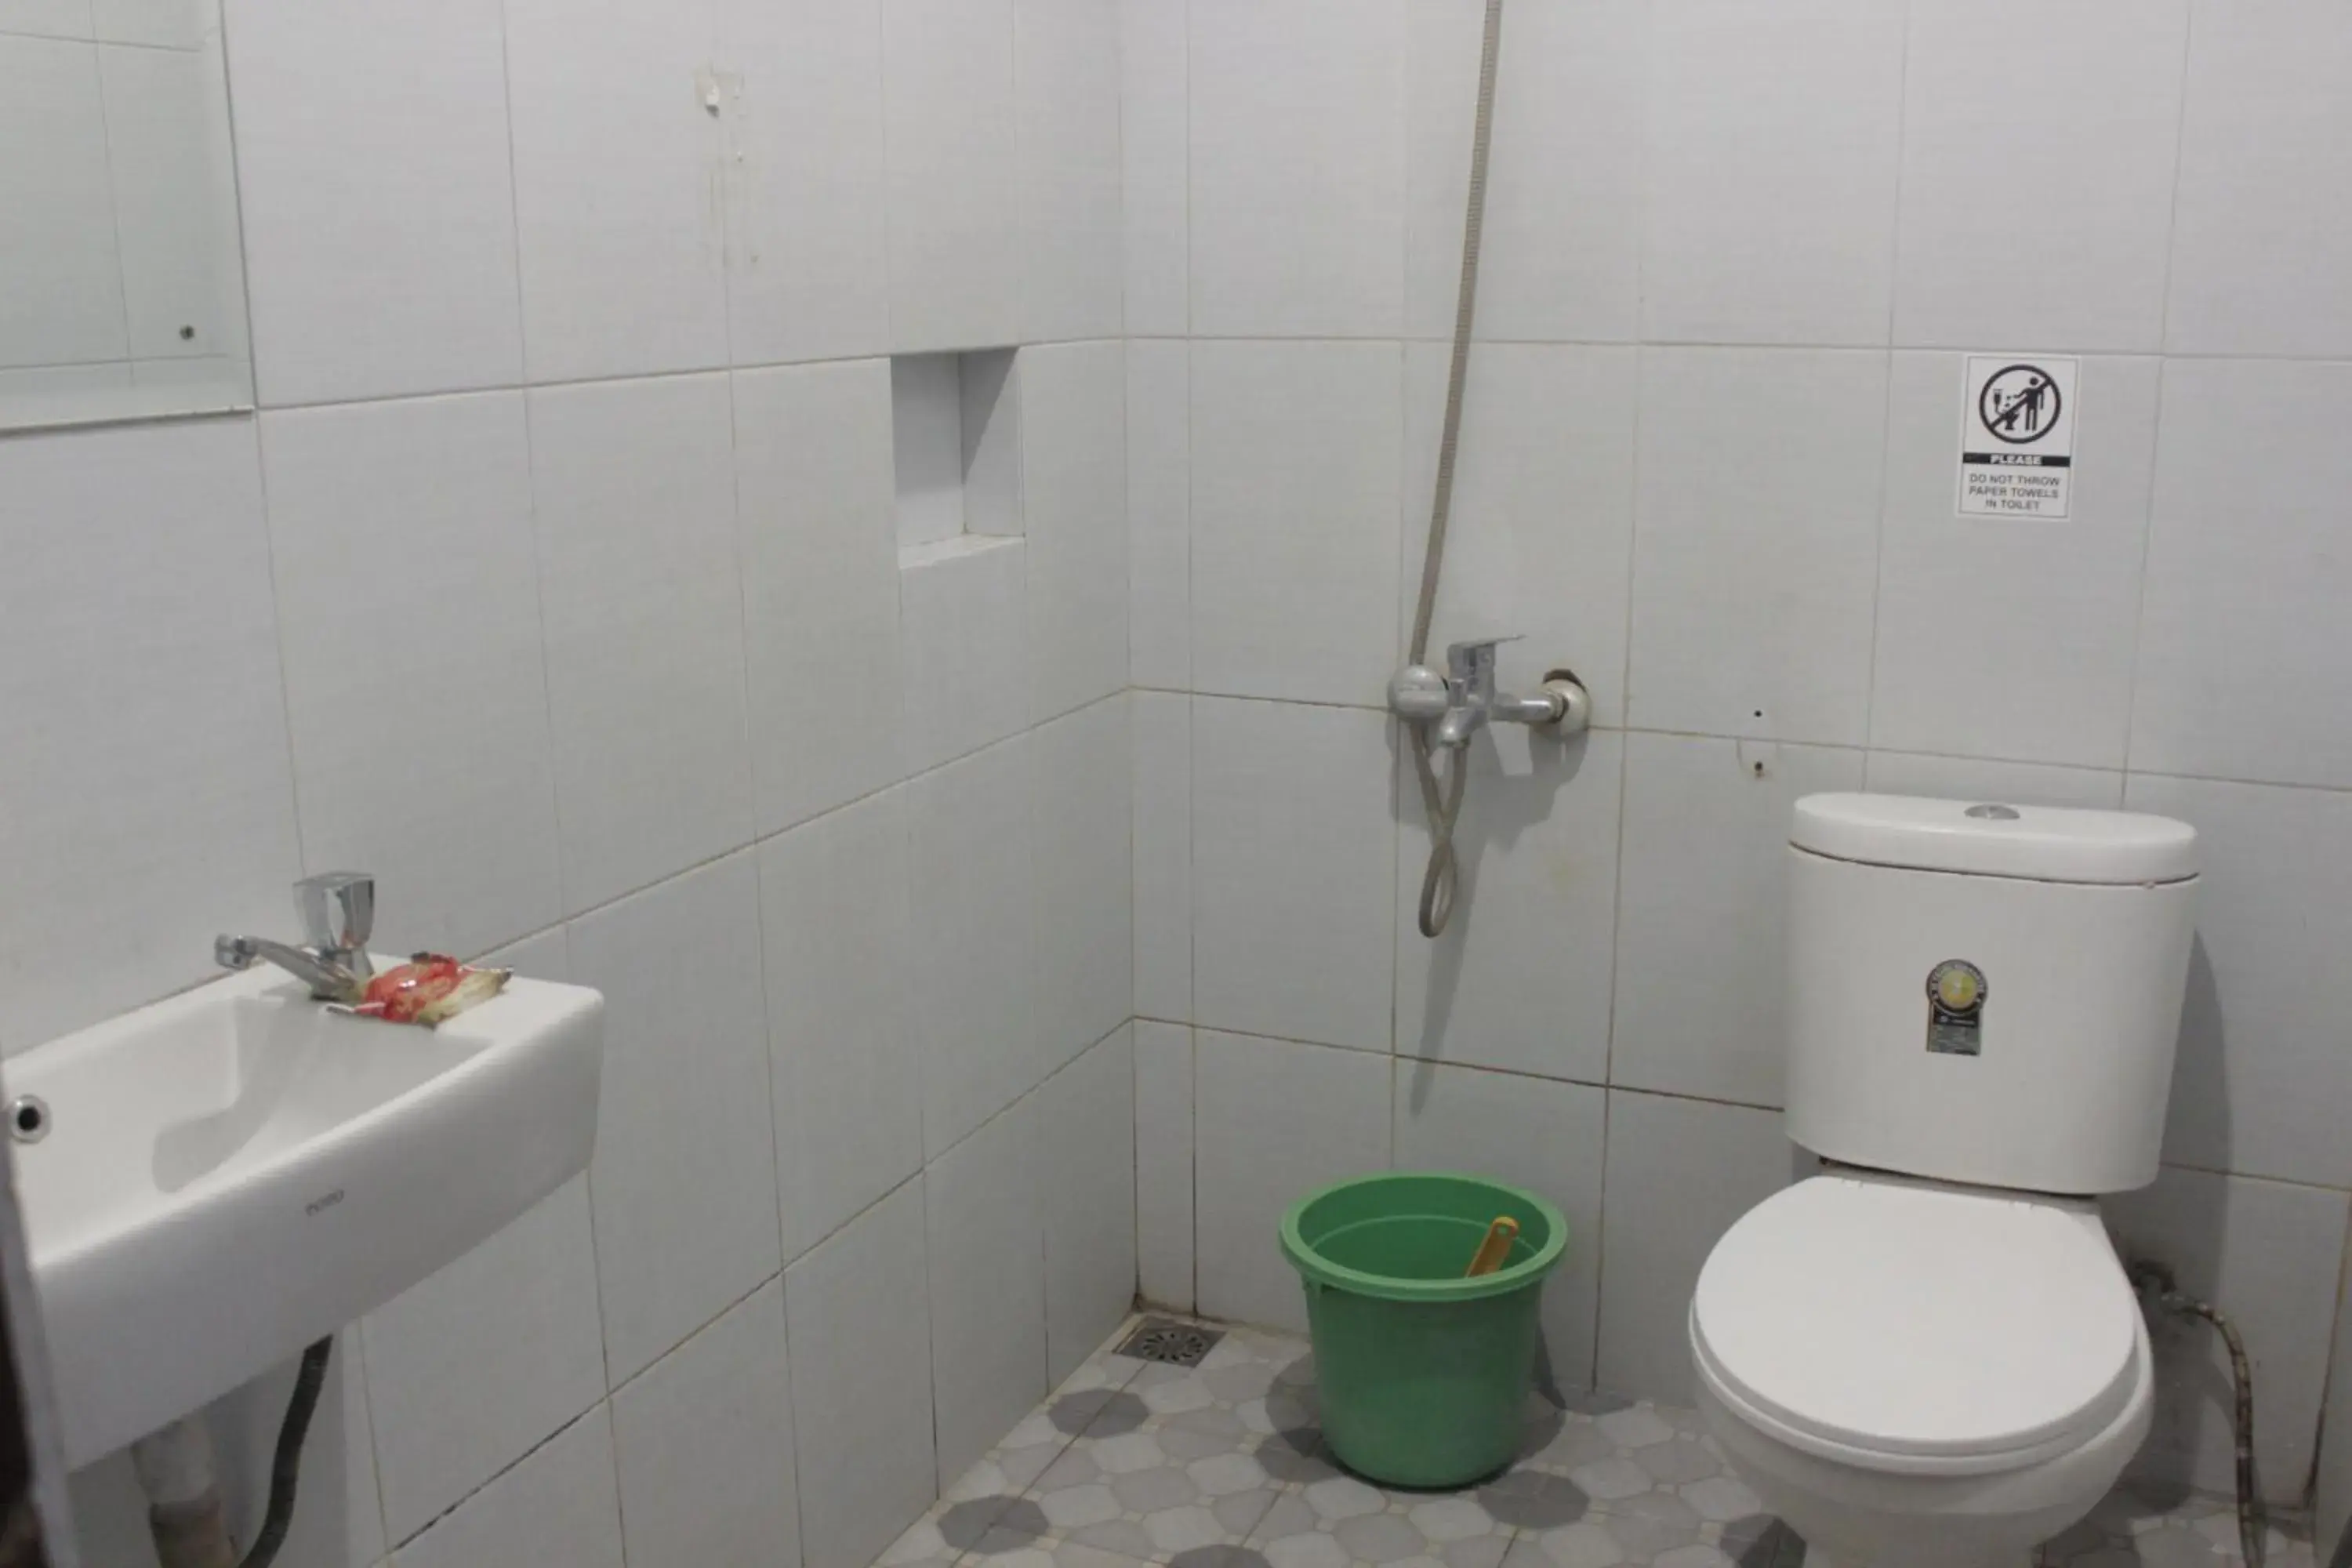 Toilet, Bathroom in OYO 206 Hotel Candra Kirana